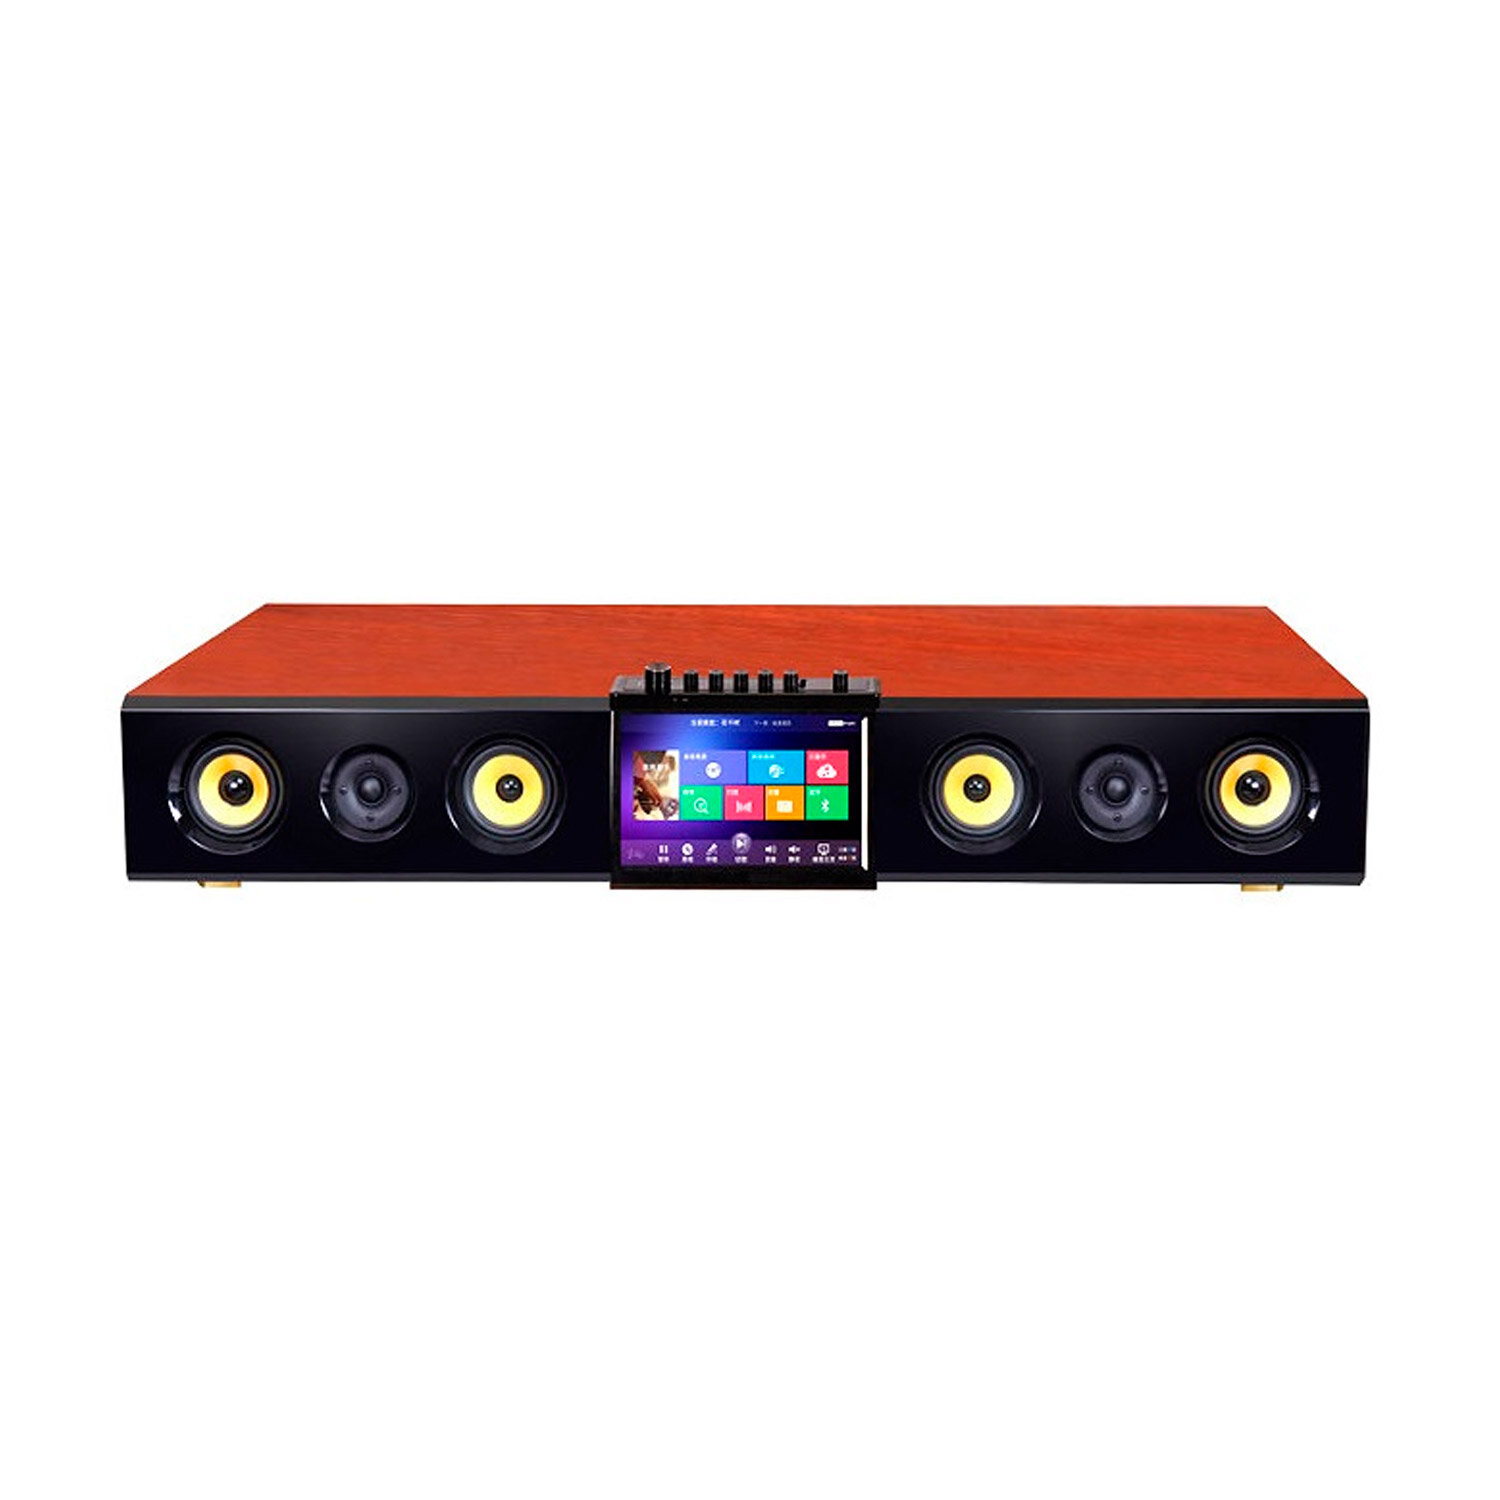 ESTRADA HD Soundbar Караоке смарт система с встроенным жестким диском 1Тб, профессиональной радиосистемой с двумя микрофонами и активной акустической системой 2.1.